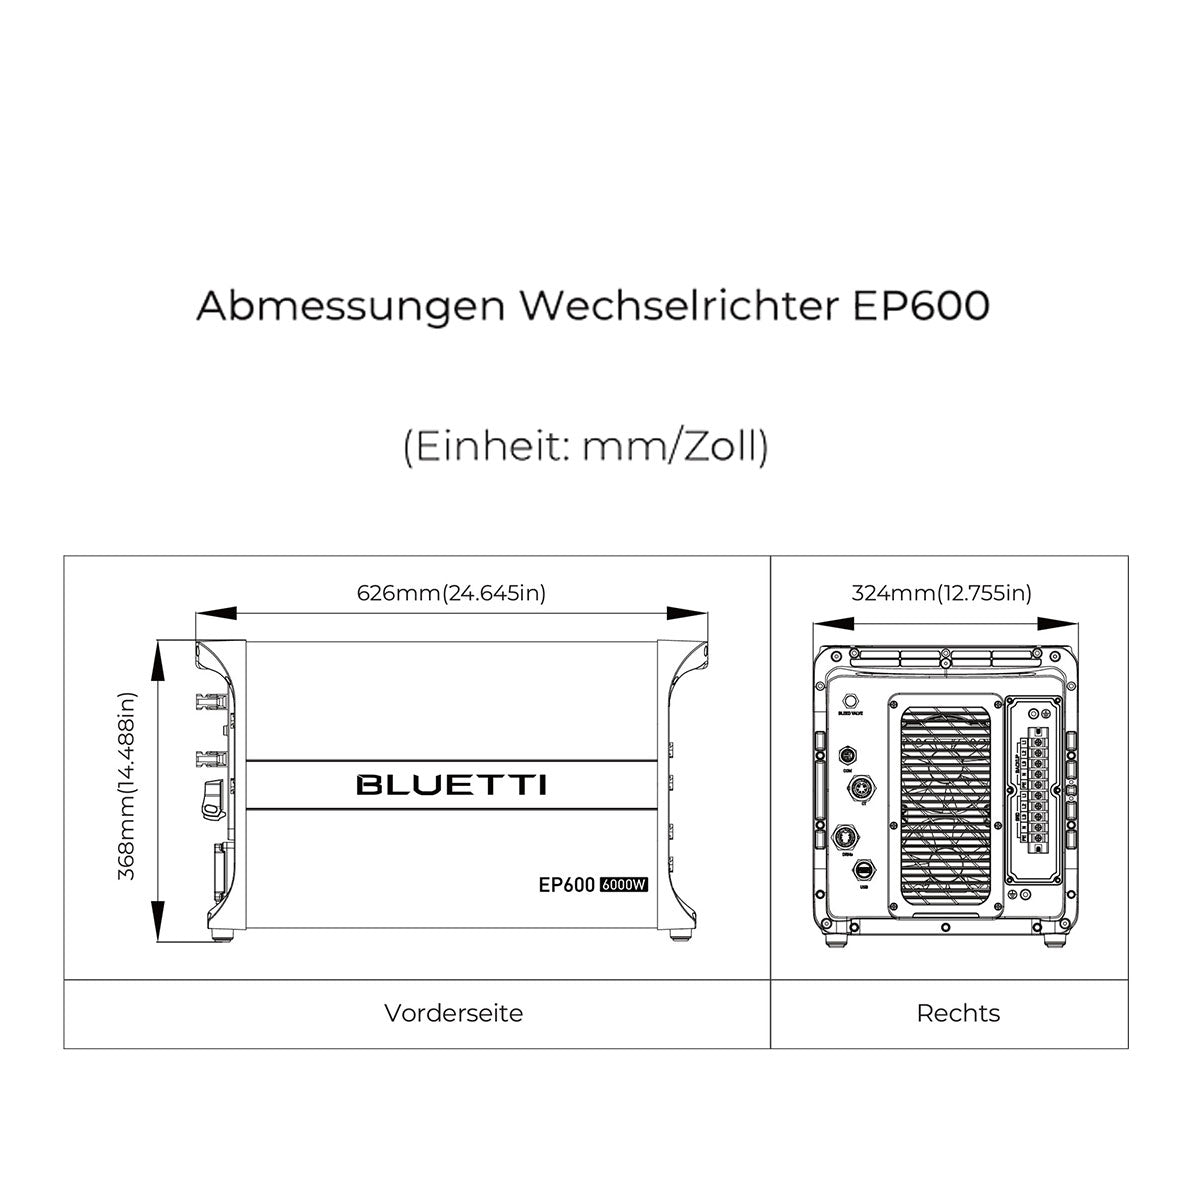 2x BLUETTI EP600 + SPEICHER B500 bis 79 kWh Solaranlage